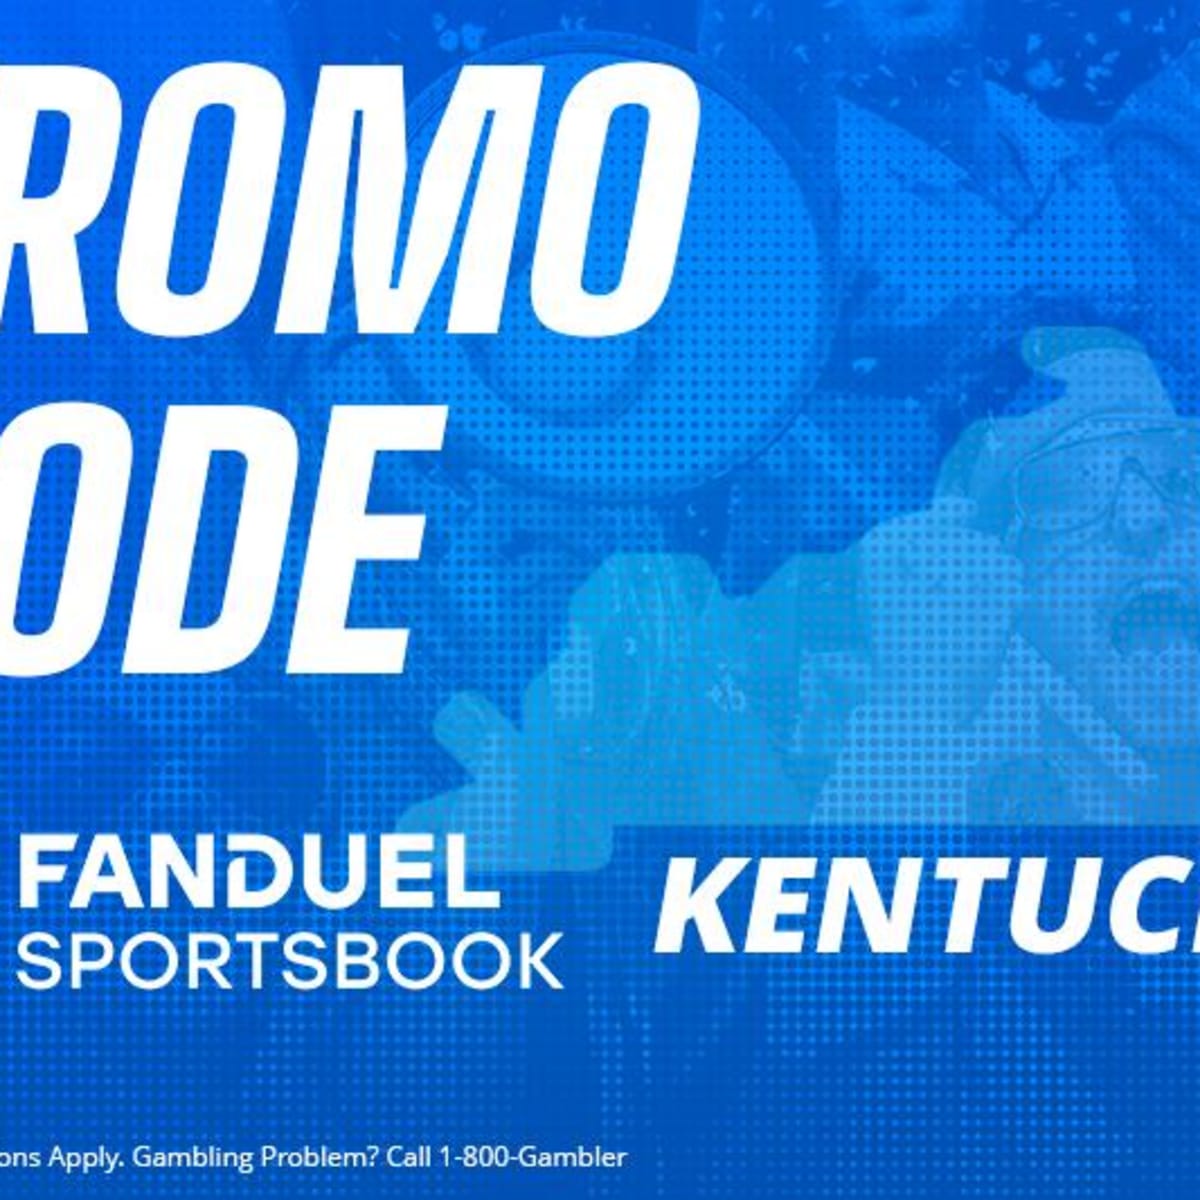 FanDuel Sportsbook on X: 